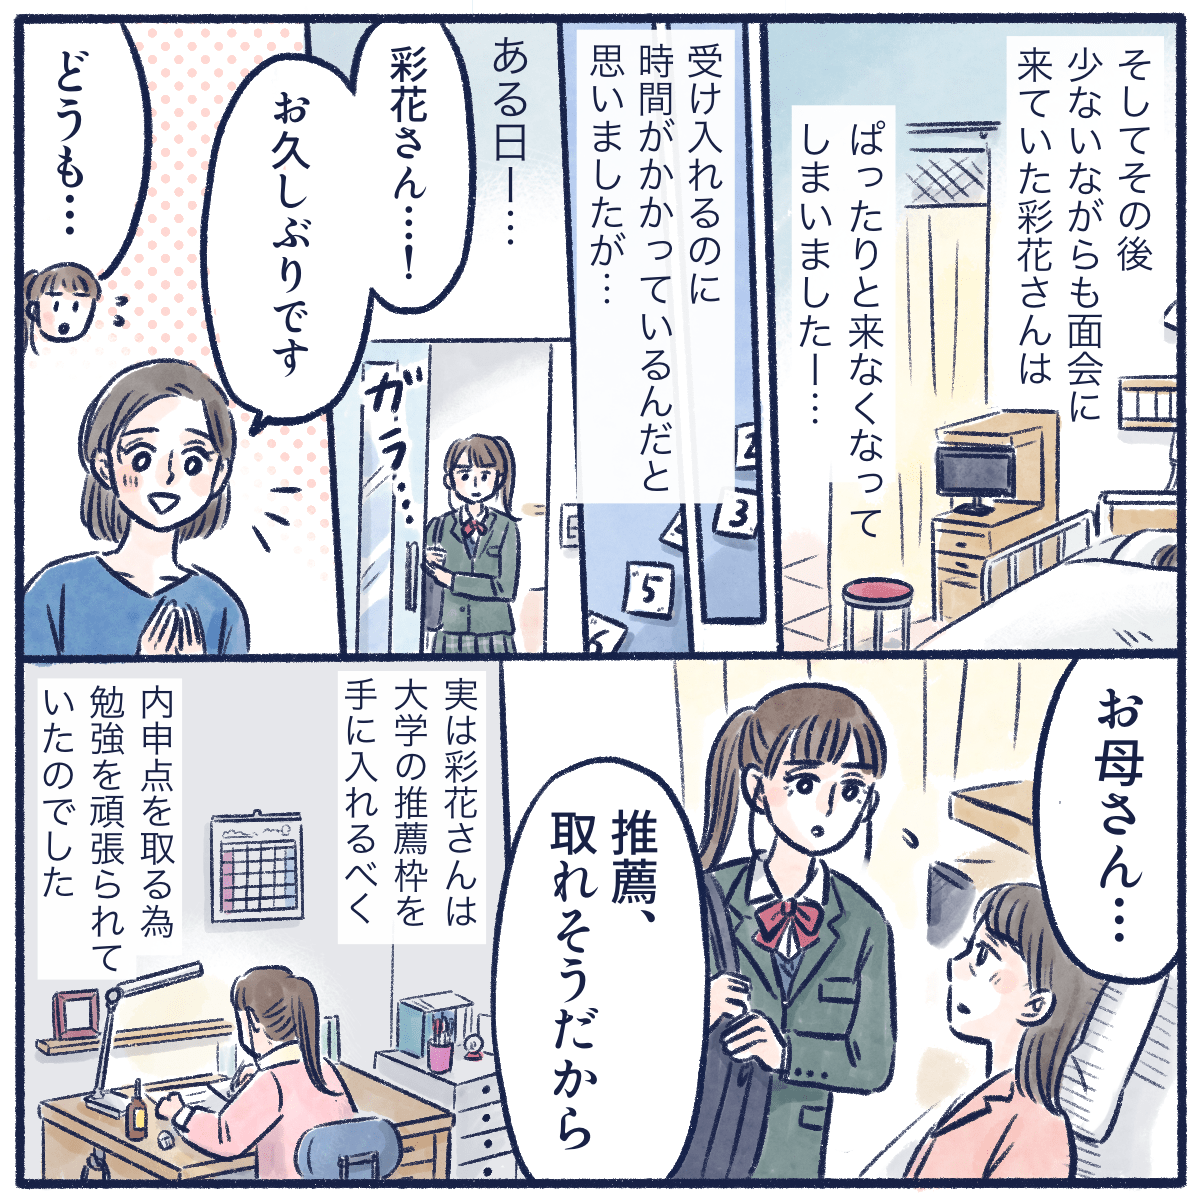 面会にぱたりと来なくなった娘さんがある日病院にやってきて小野寺さんに推薦が取れそうだと話した。